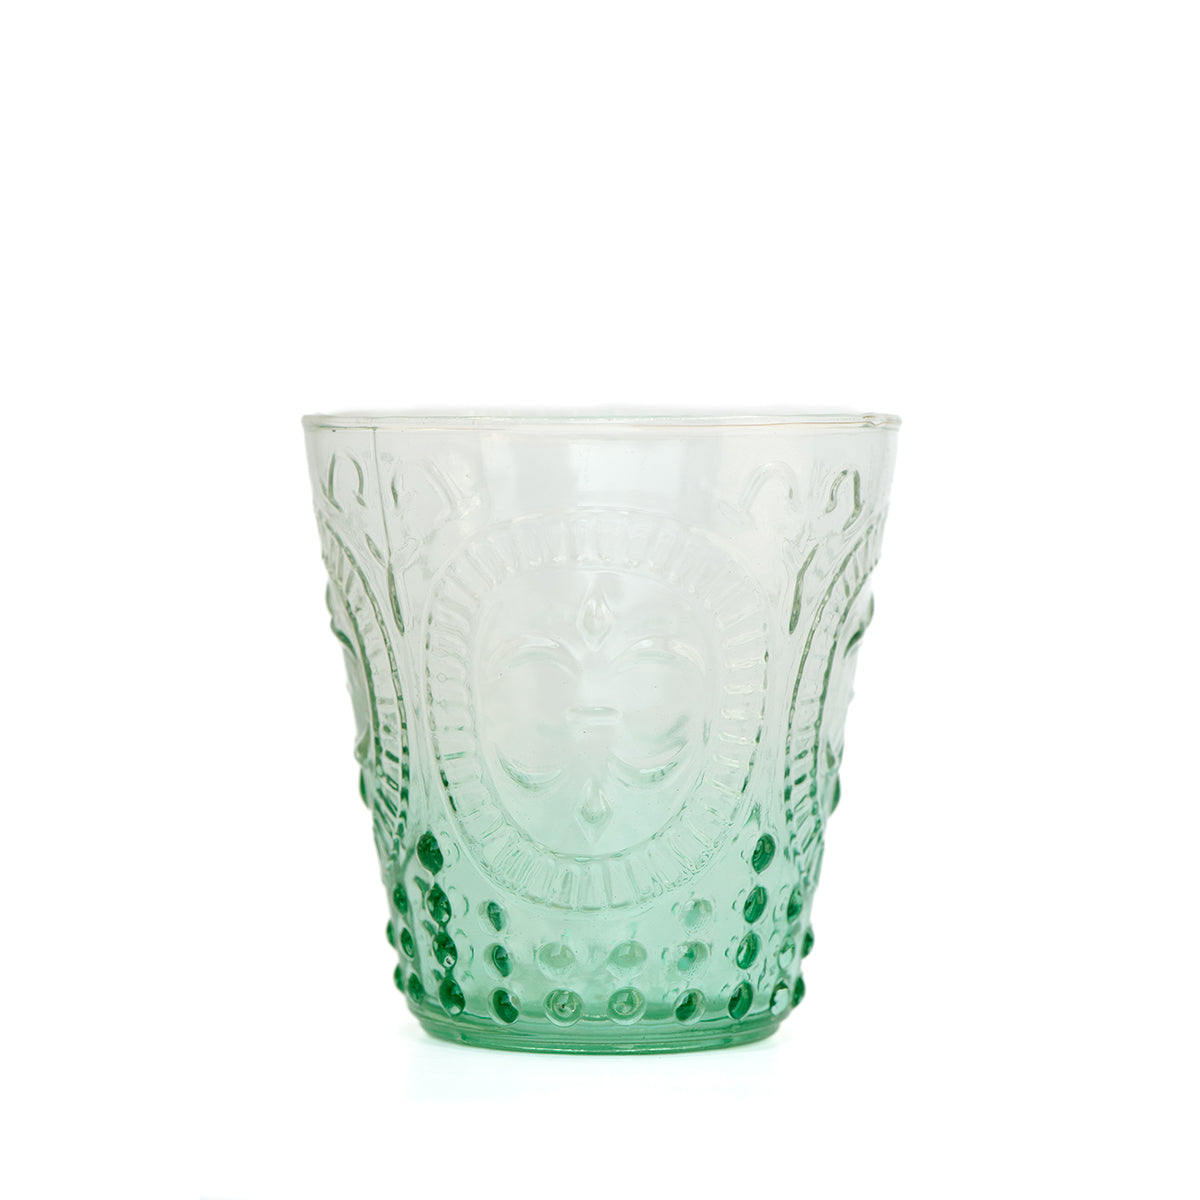 Fleur De Lil Water Glasses | Azure Ombre | Set of 4 Glasses